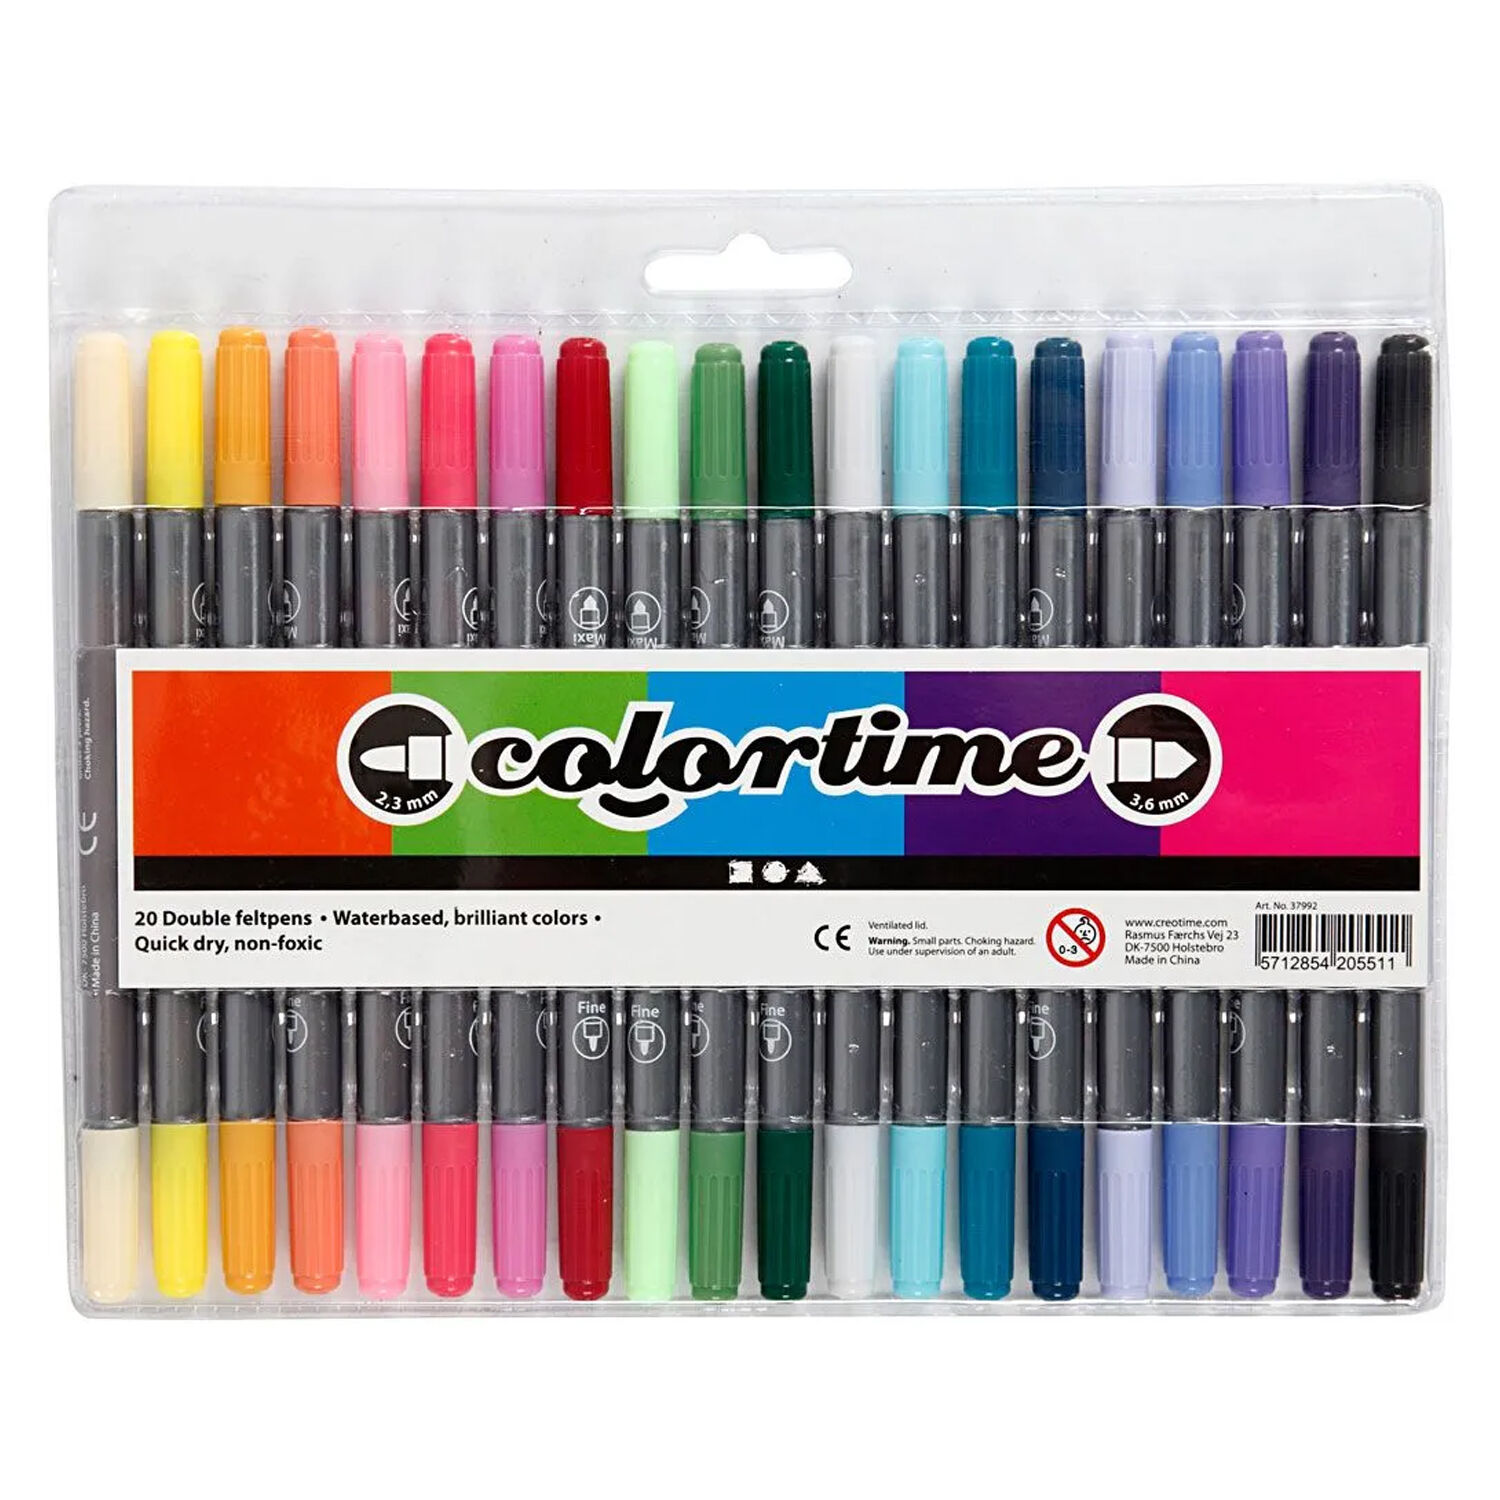 NEU Colortime Dual-Filzstifte, Trend-Farben, Strichstrke 2,3+3,6 mm, 20 Stk.